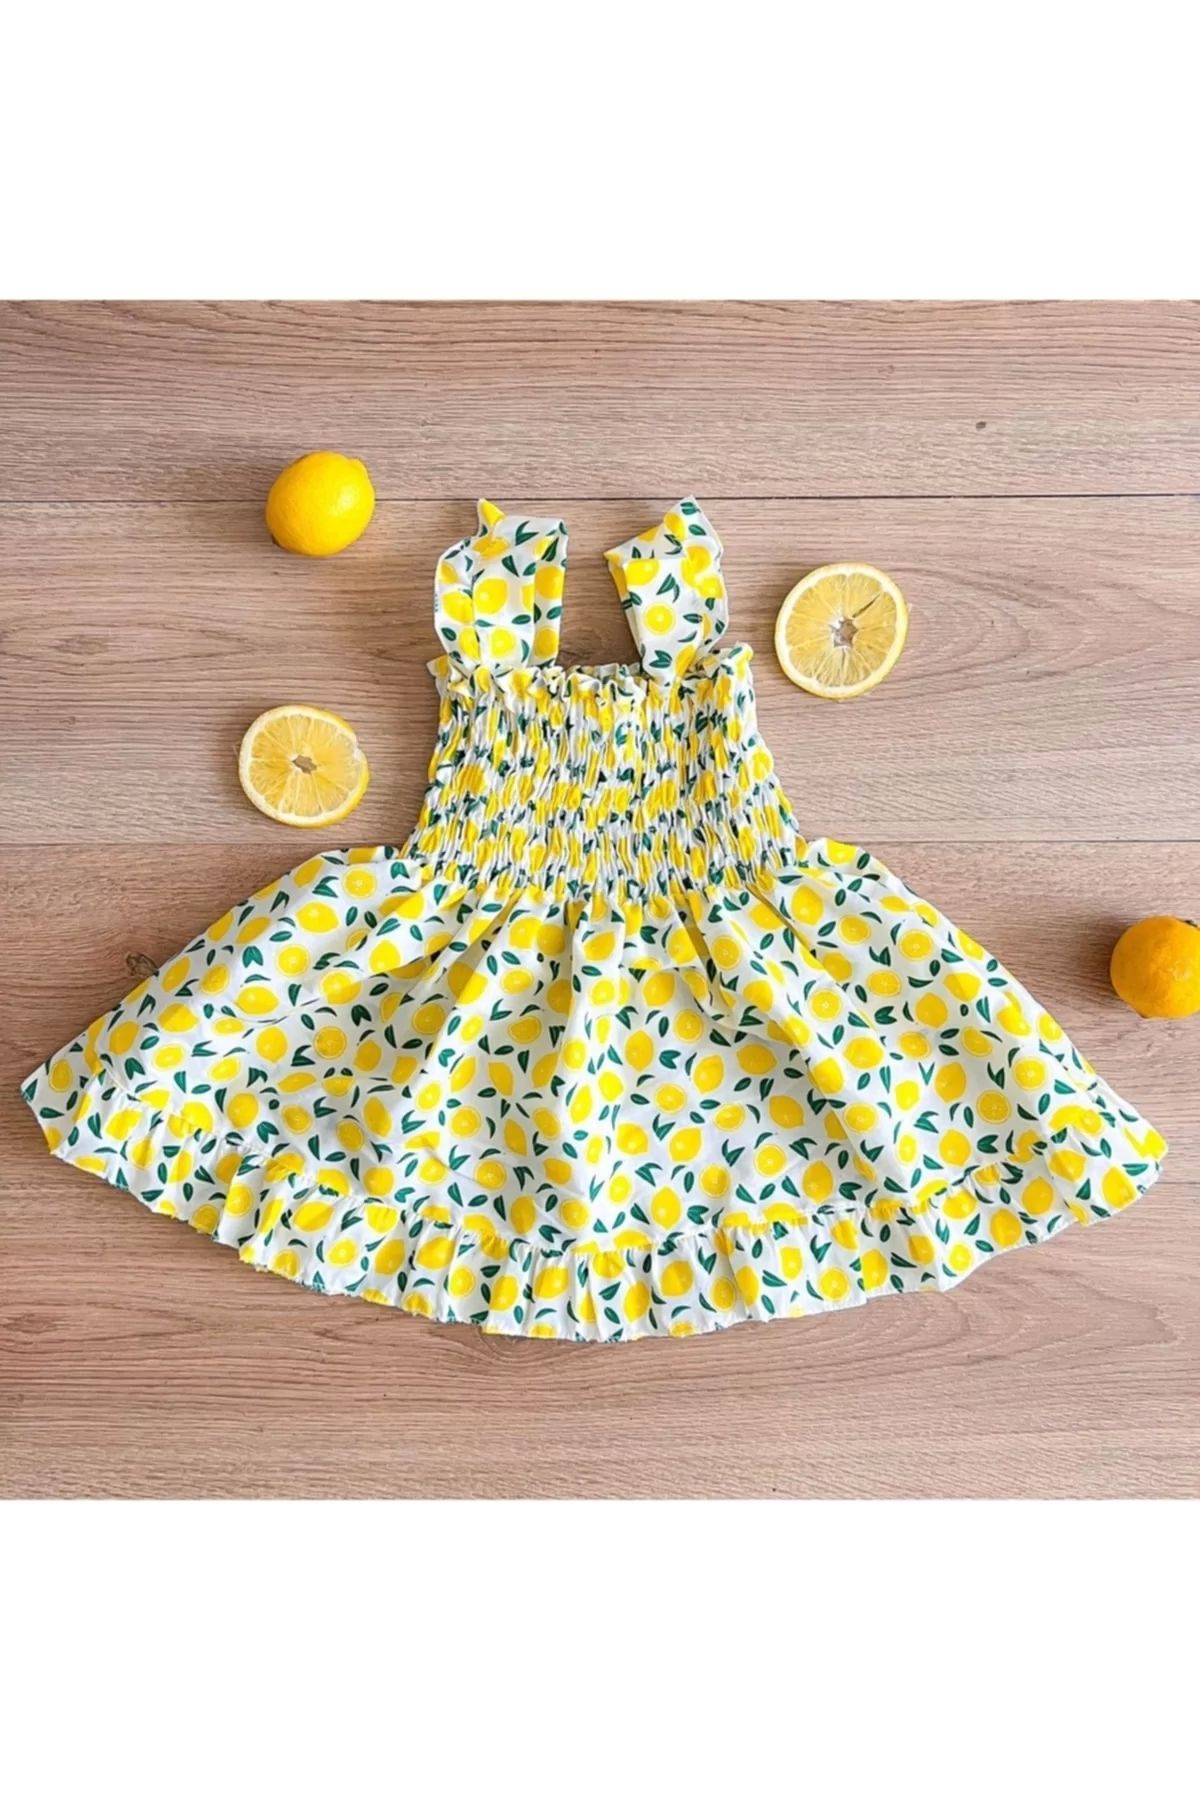 YUKOBABY Limonlu Yazlık Elbise Yklmn01